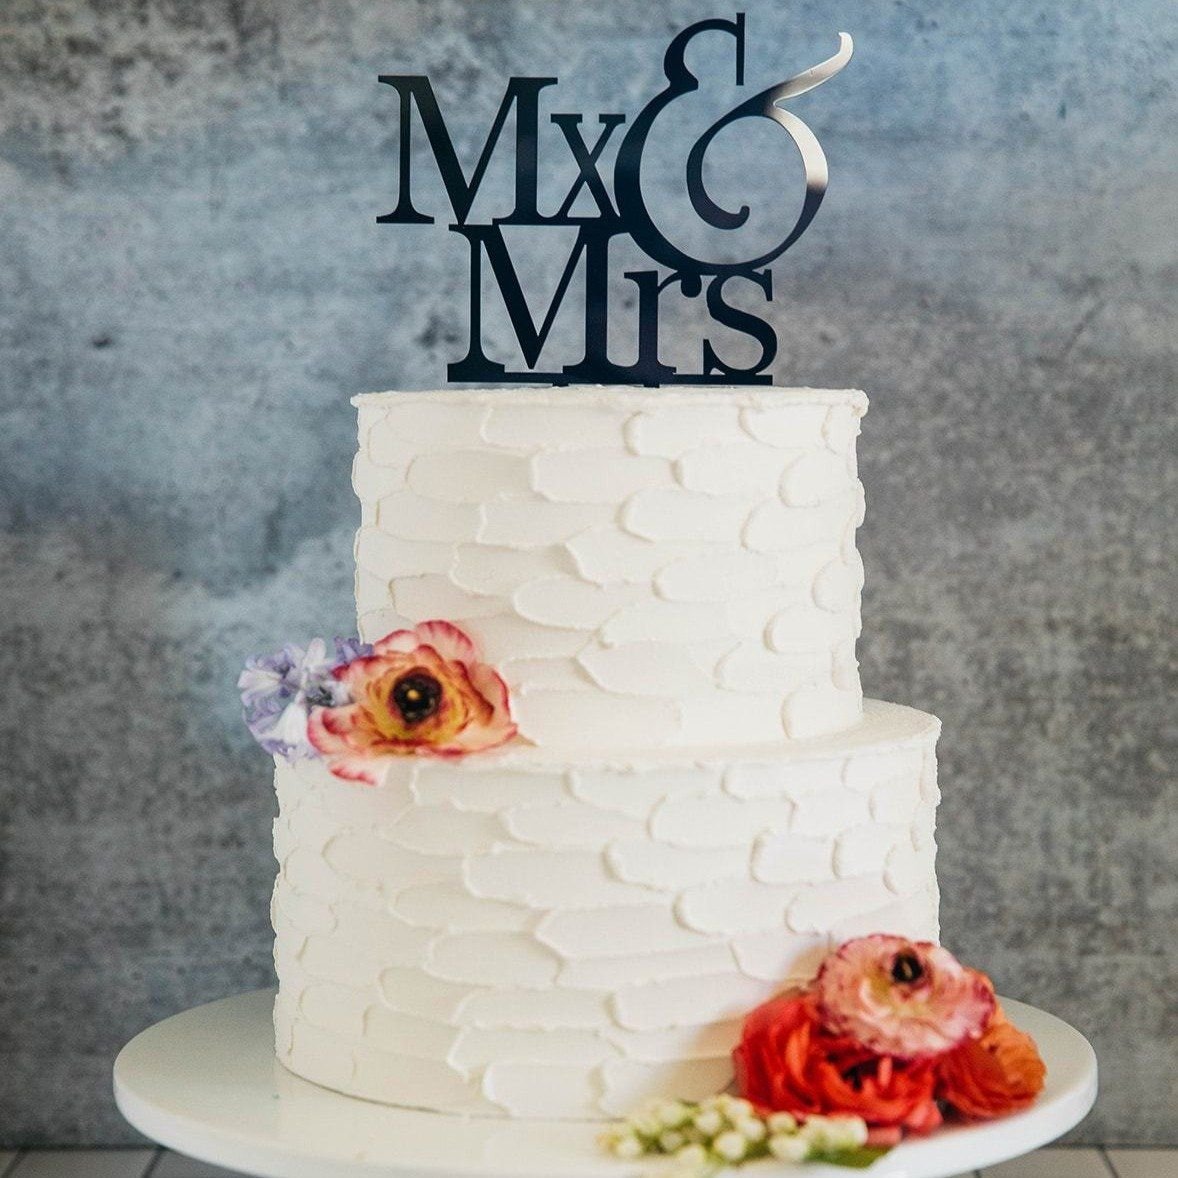 Mx & Mrs LGBT Wedding Cake Topper.jpg